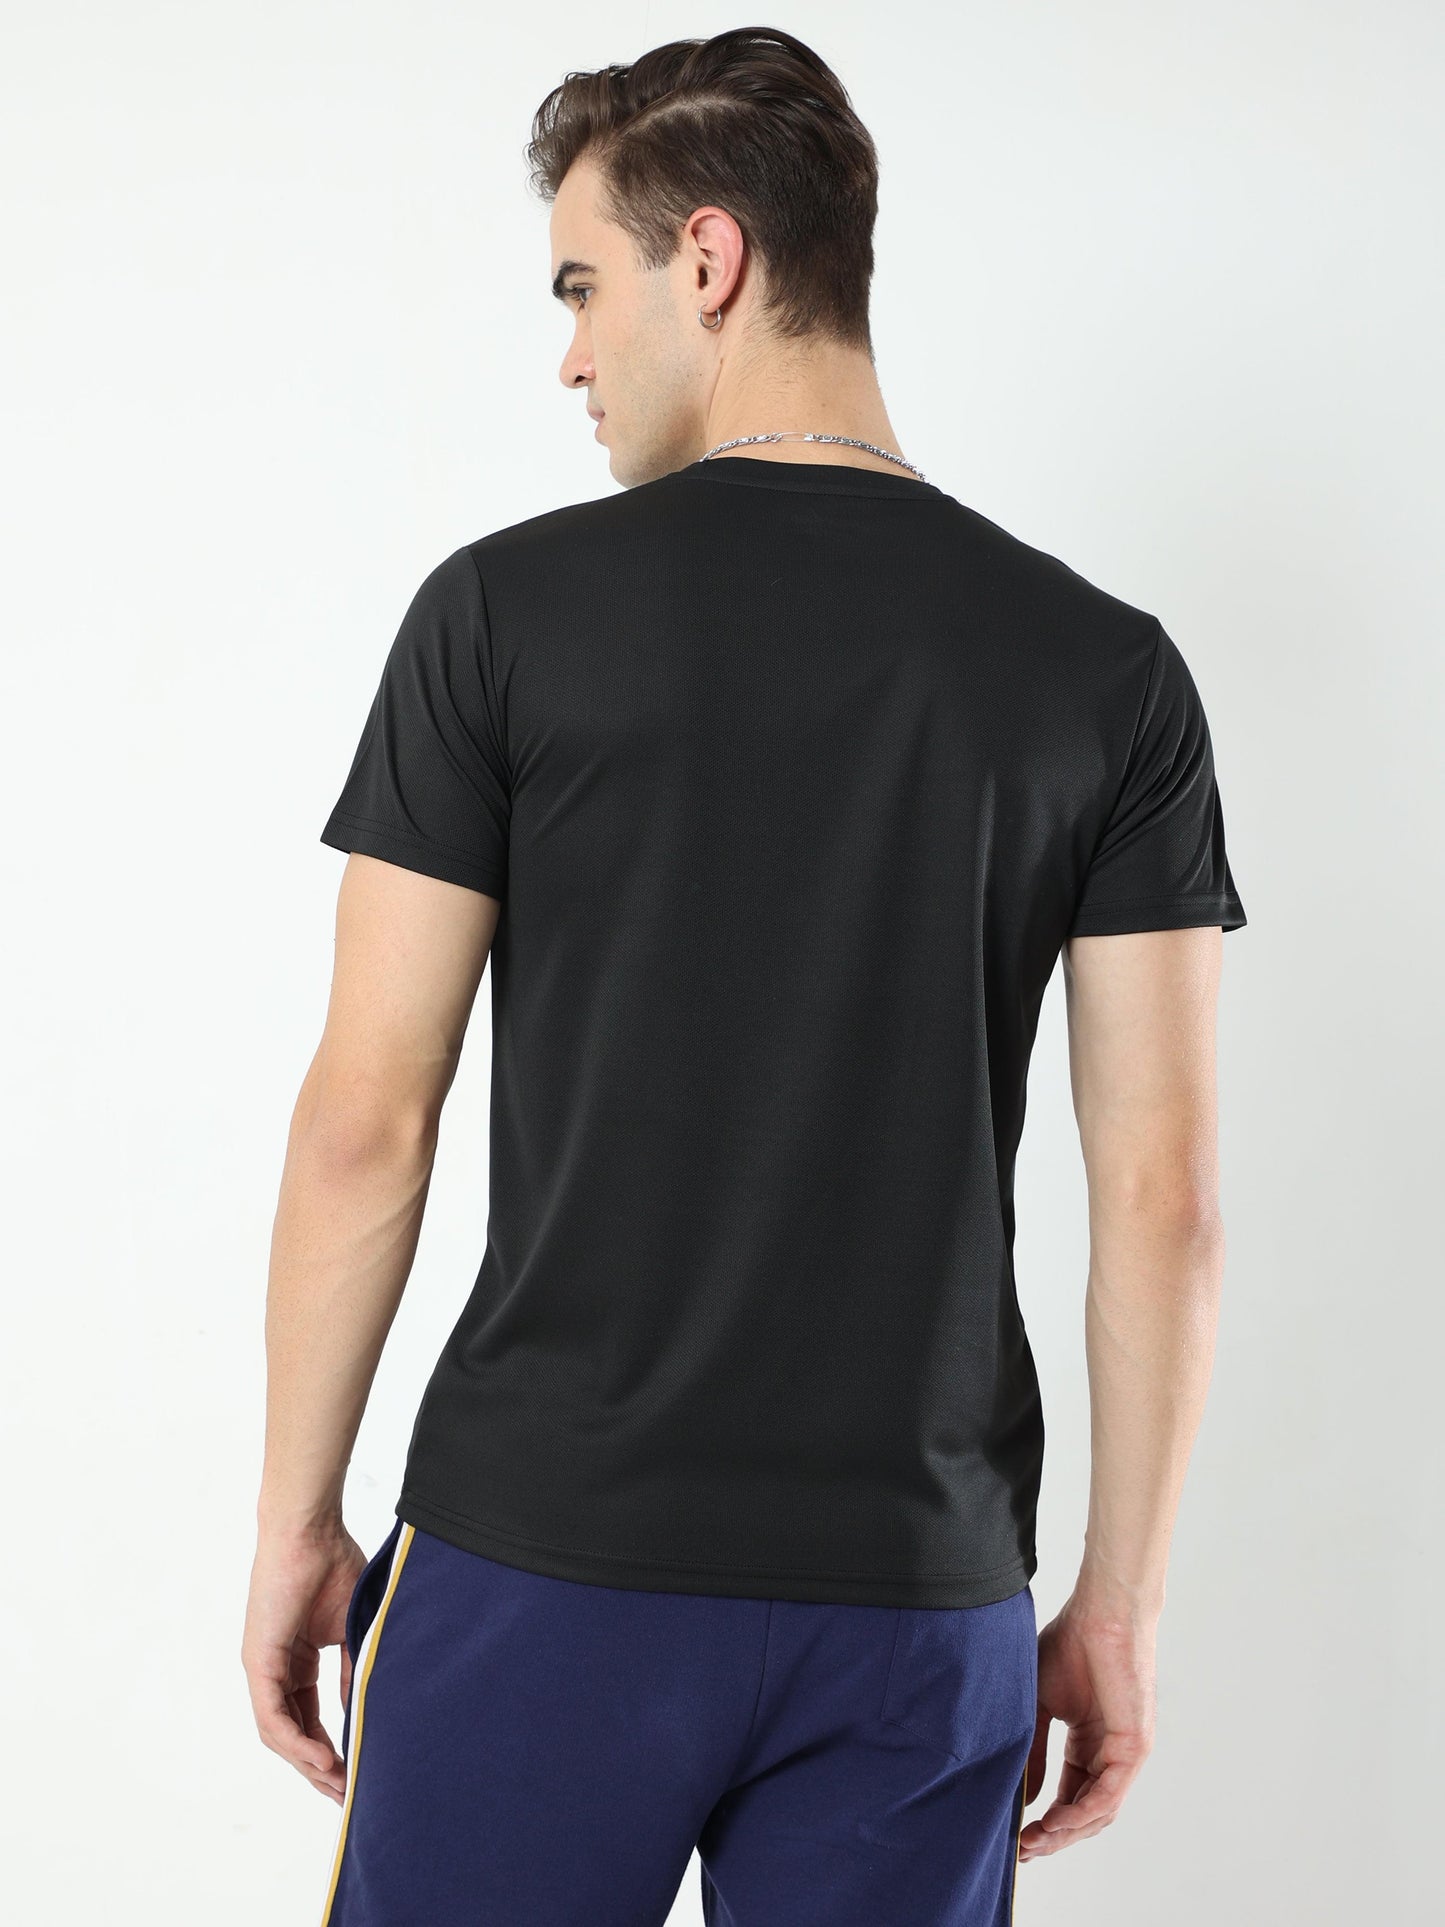 Athleisure Men's Premium T-Shirt - Black